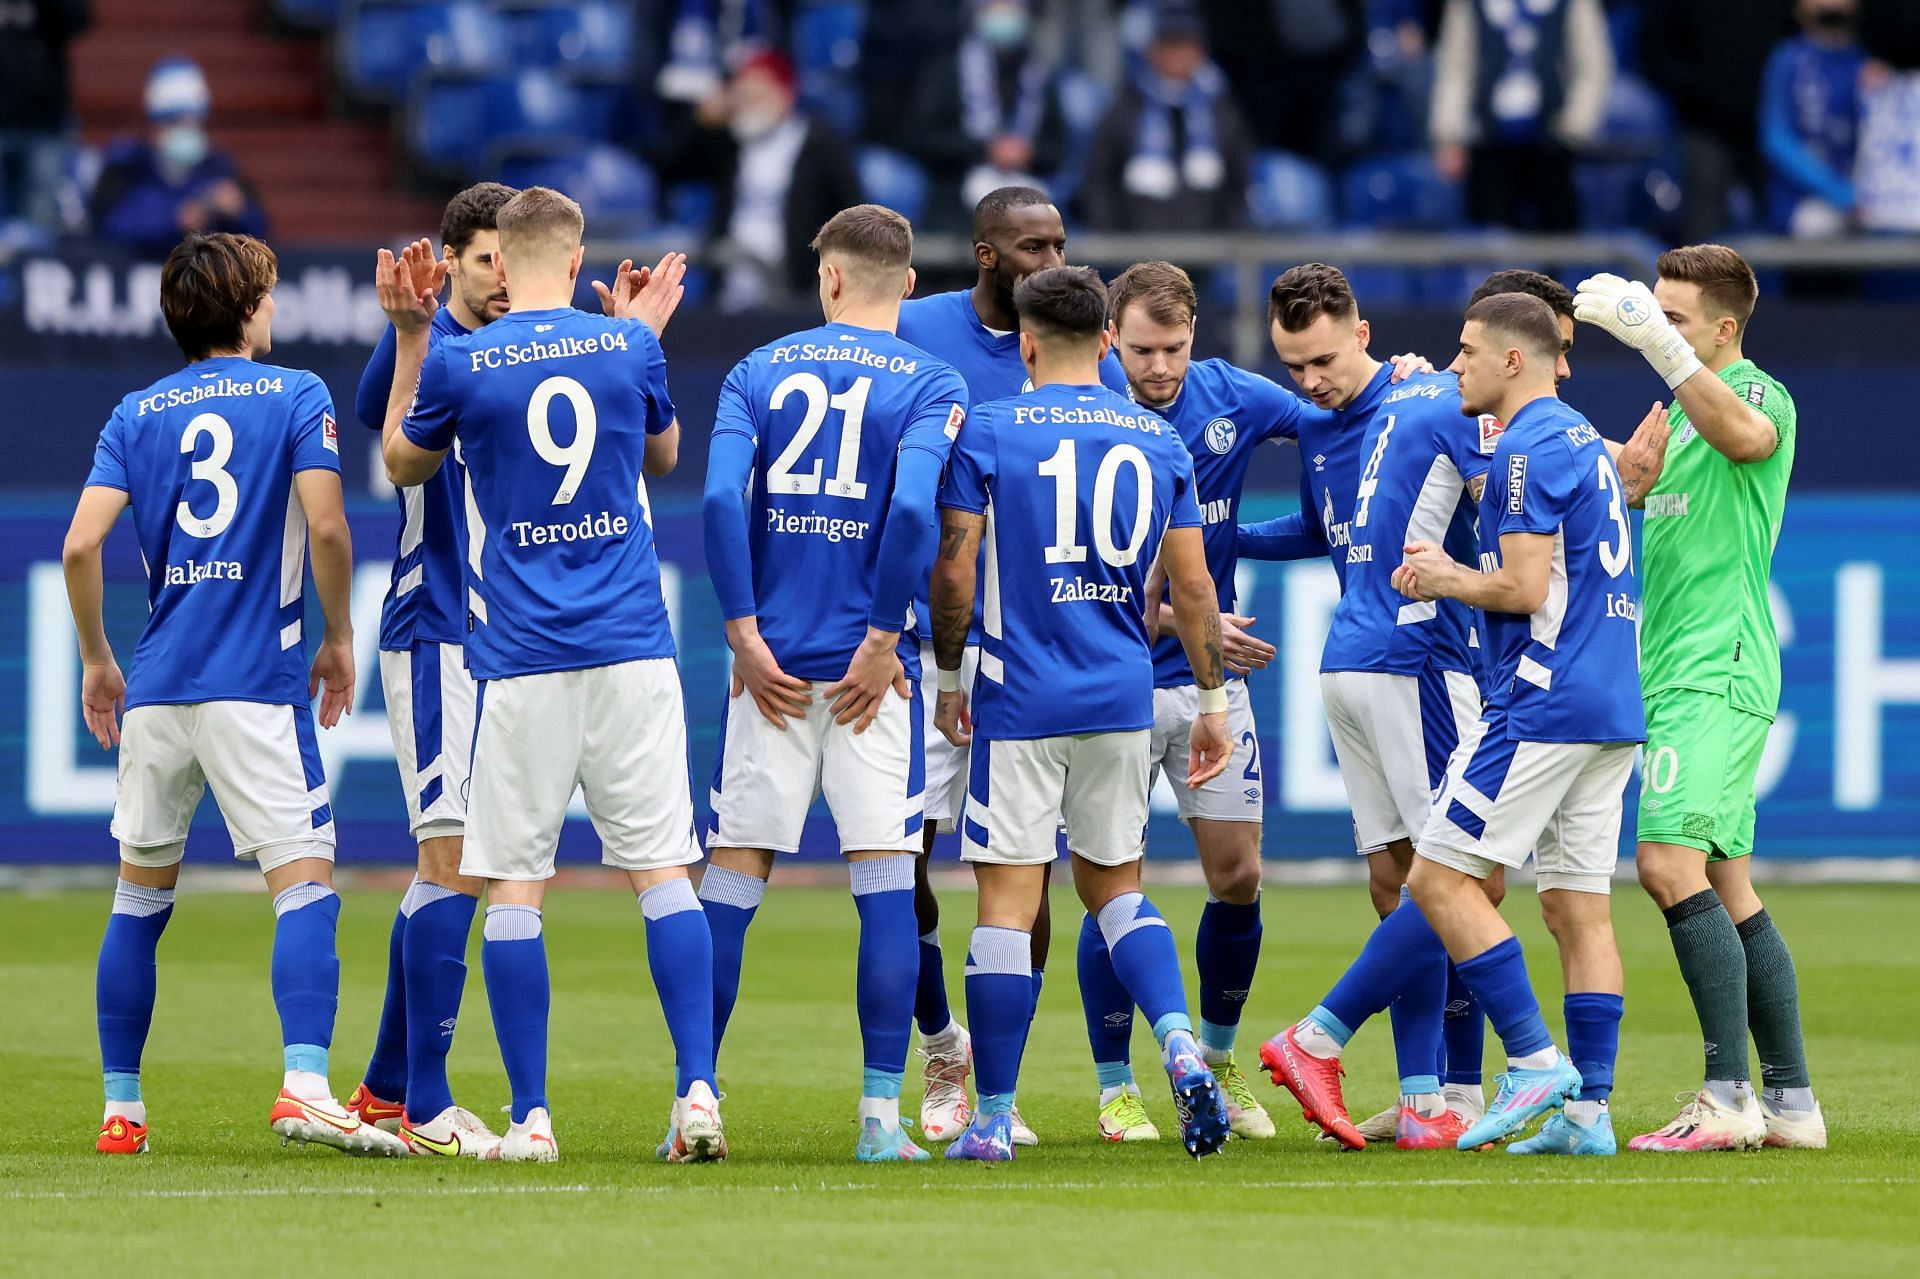 FC Schalke 04 will host Paderborn on Friday - Second Bundesliga